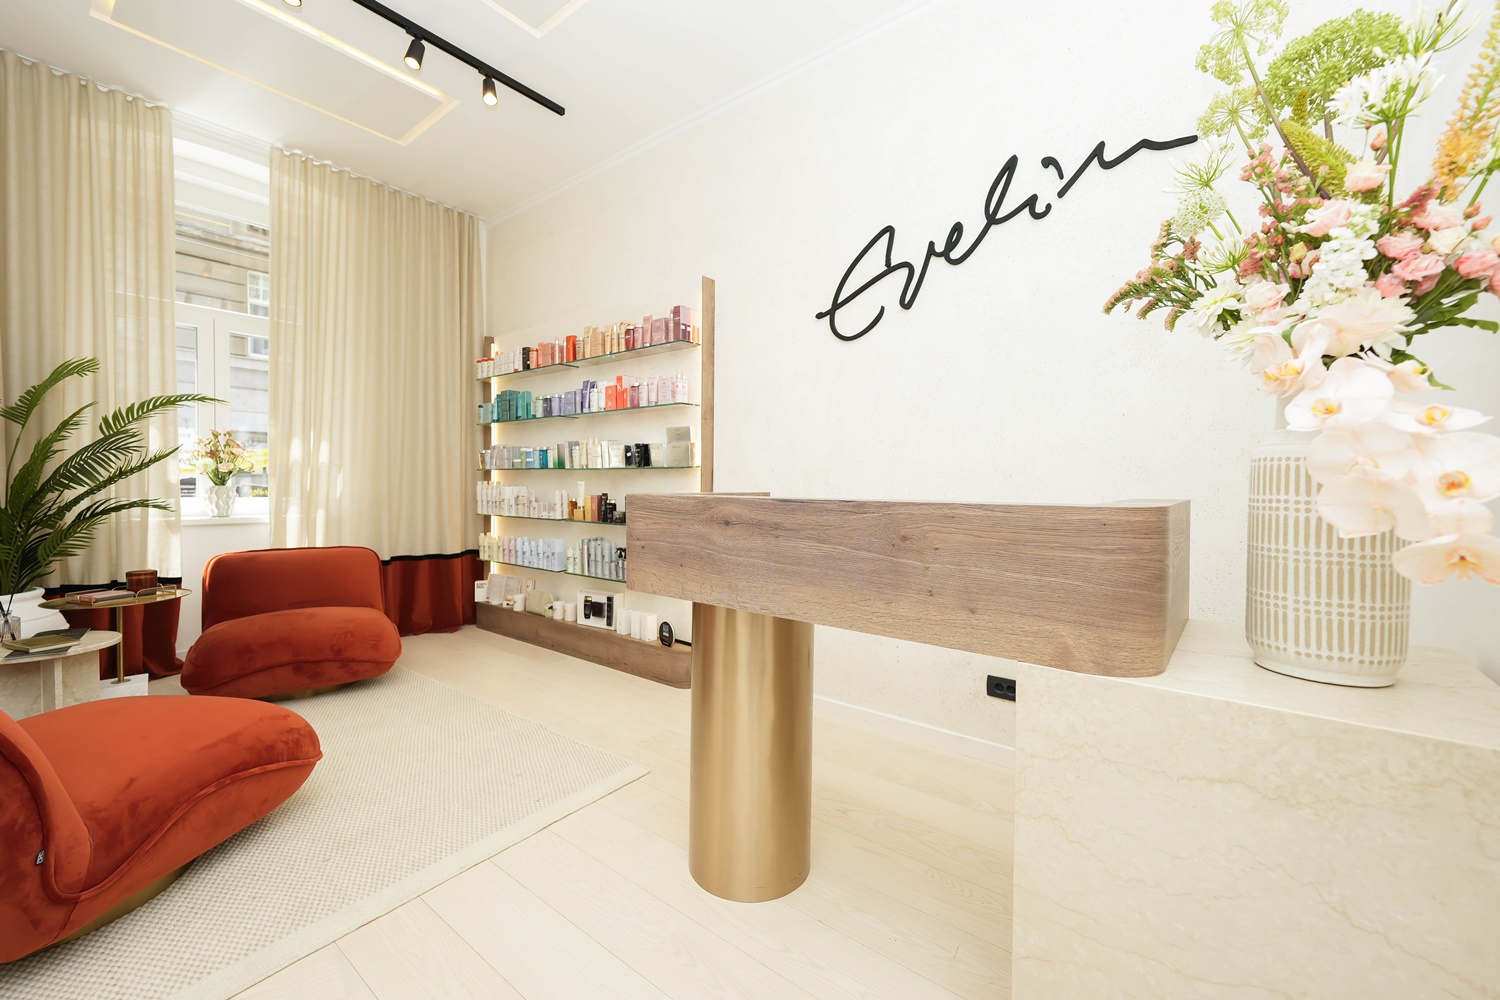 Nova slavljenička era salona Evelin - atraktivna lokacija i nepromijenjena kvaliteta